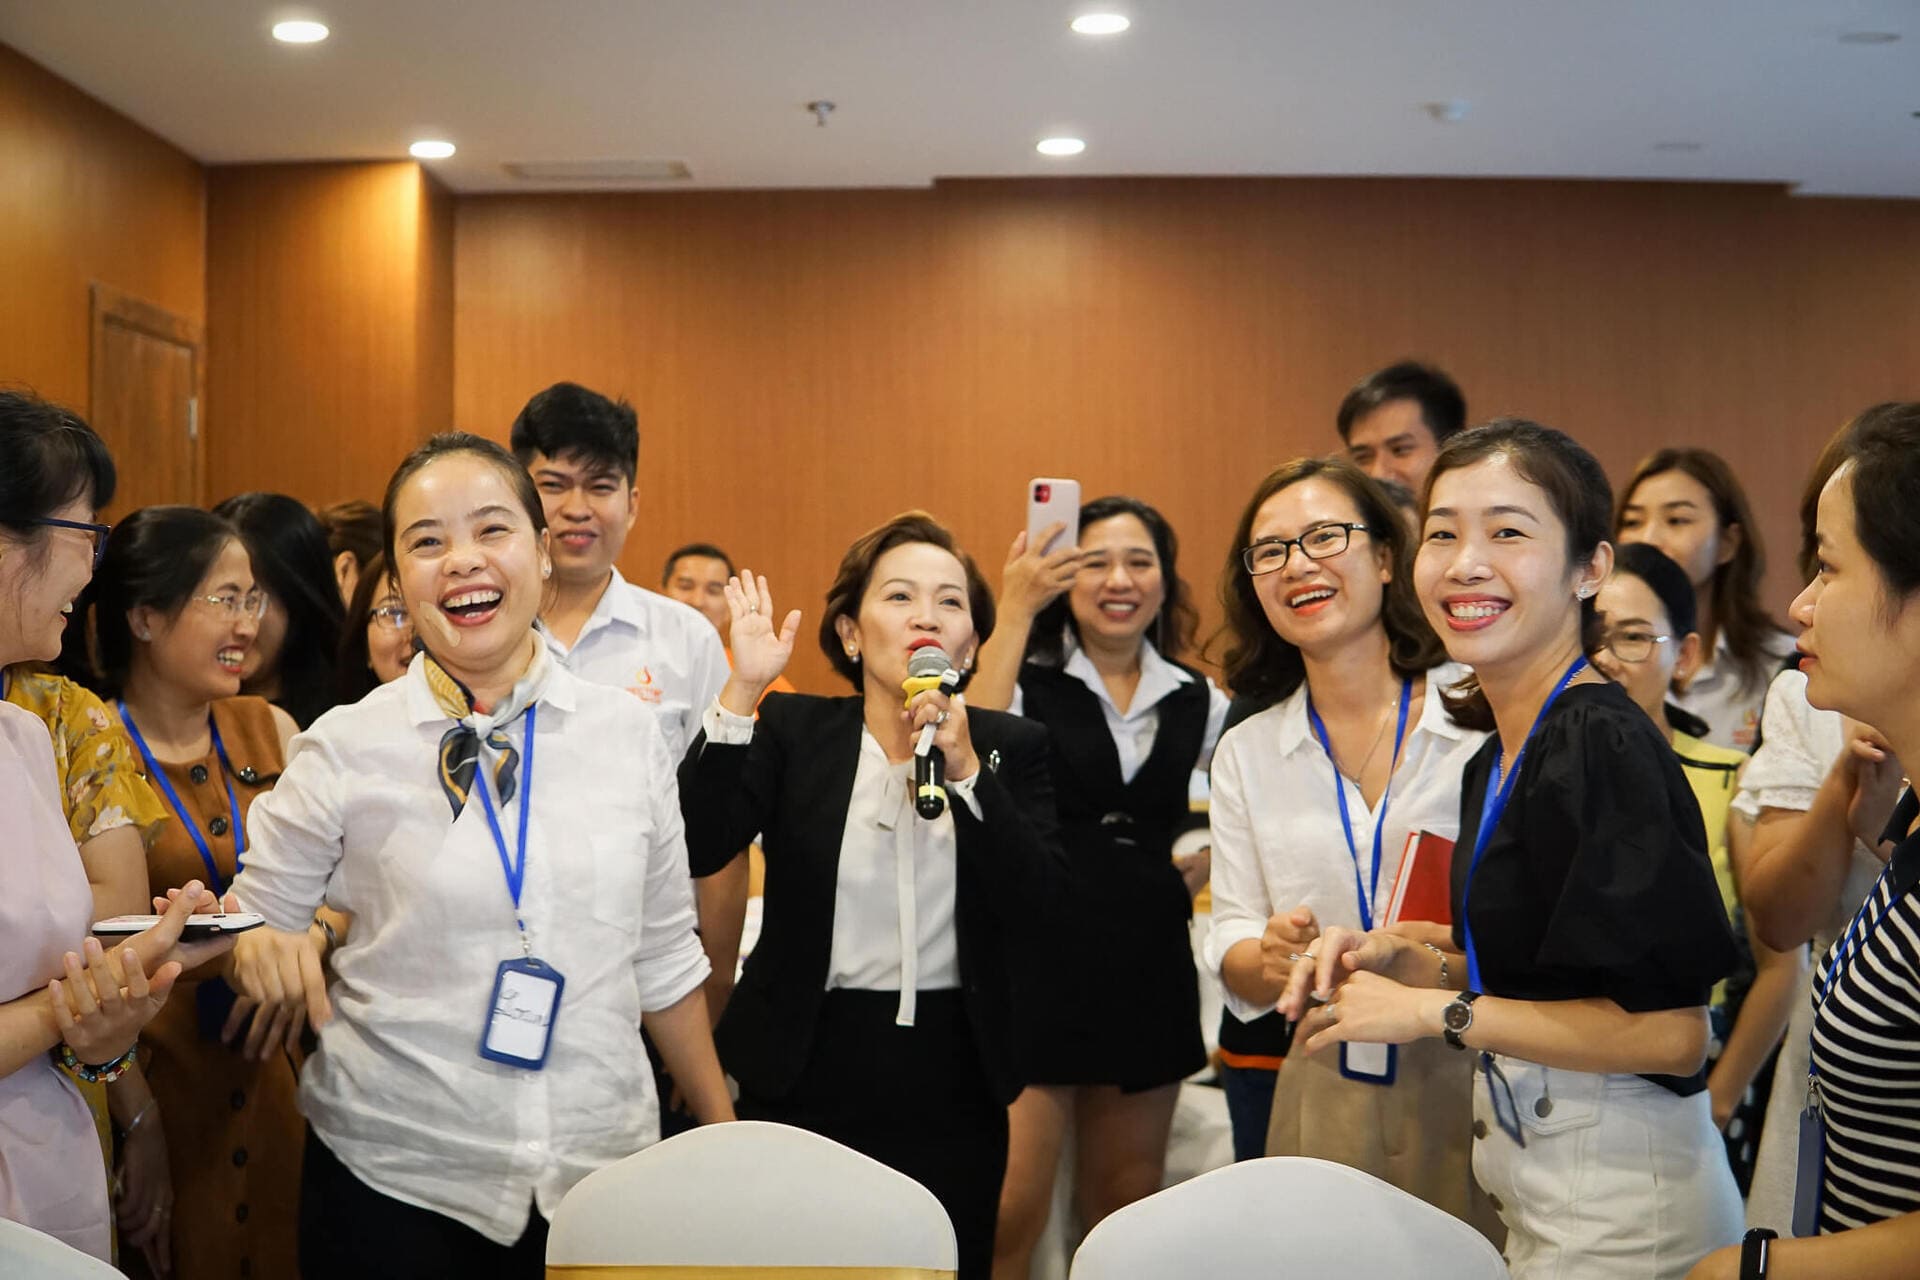  Trainer Trần Minh Hảo chia sẻ về Dịch vụ chăm sóc khách hàng